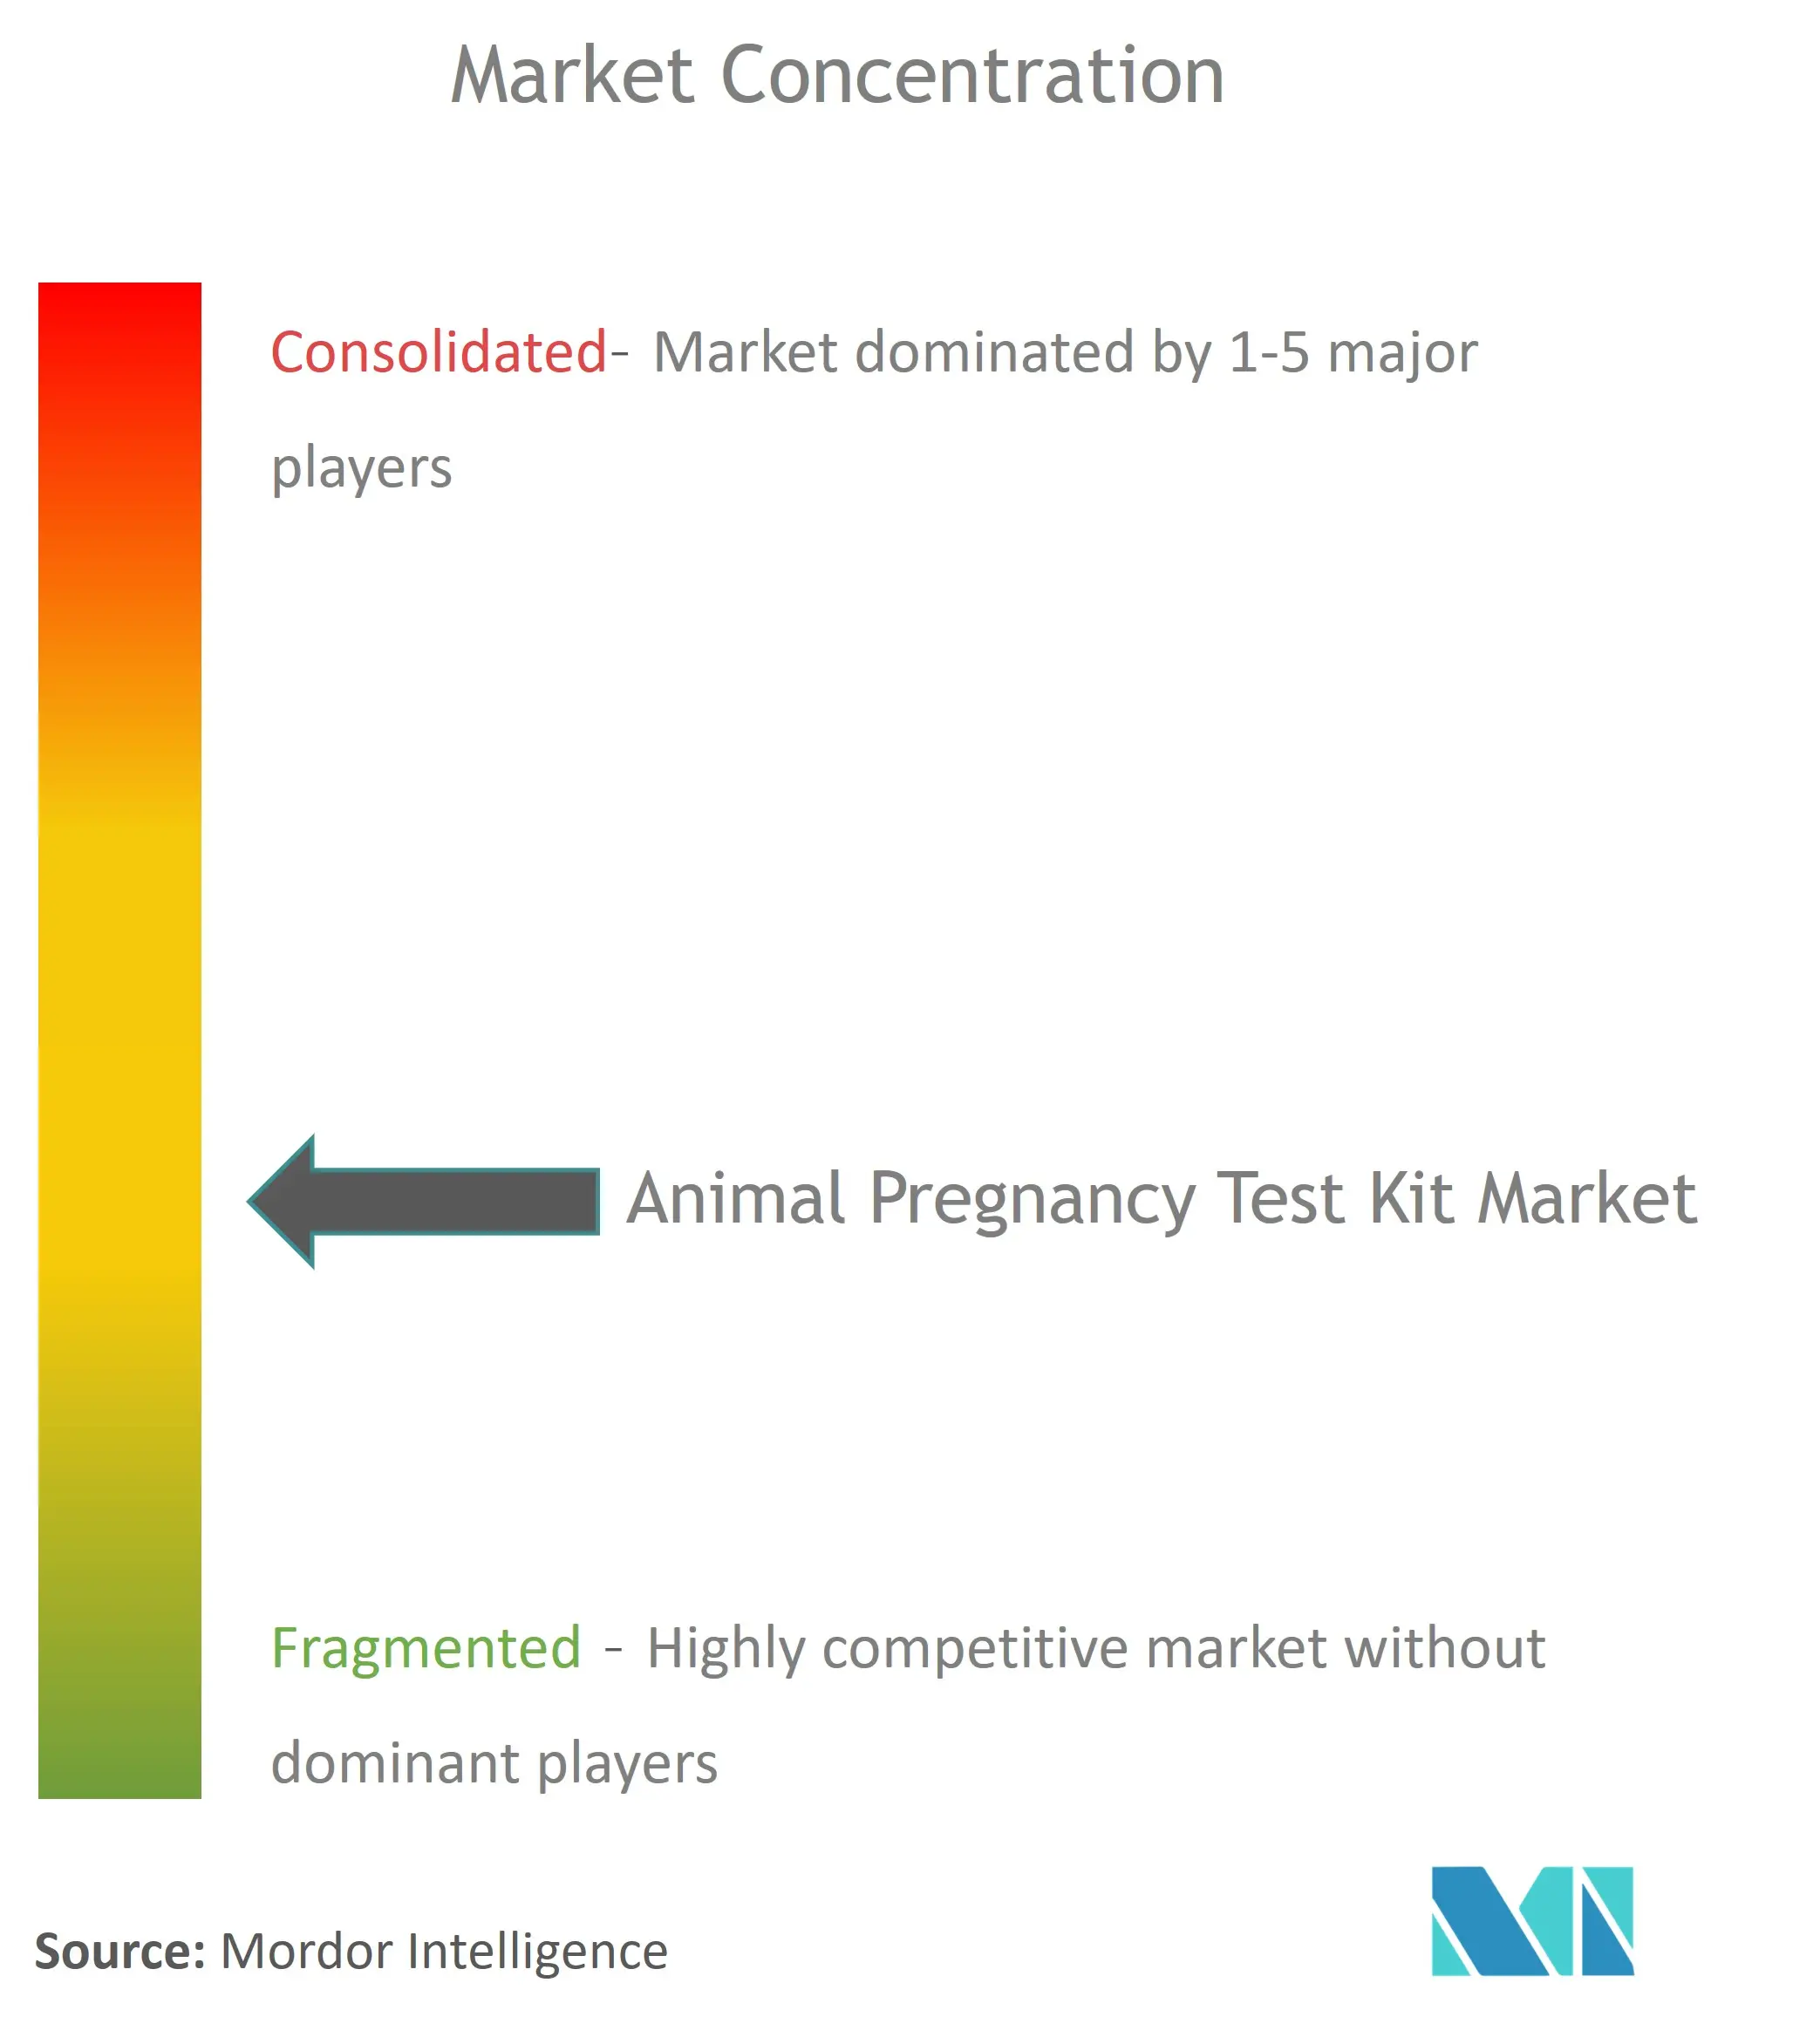 Концентрация рынка наборов для тестирования на беременность животных